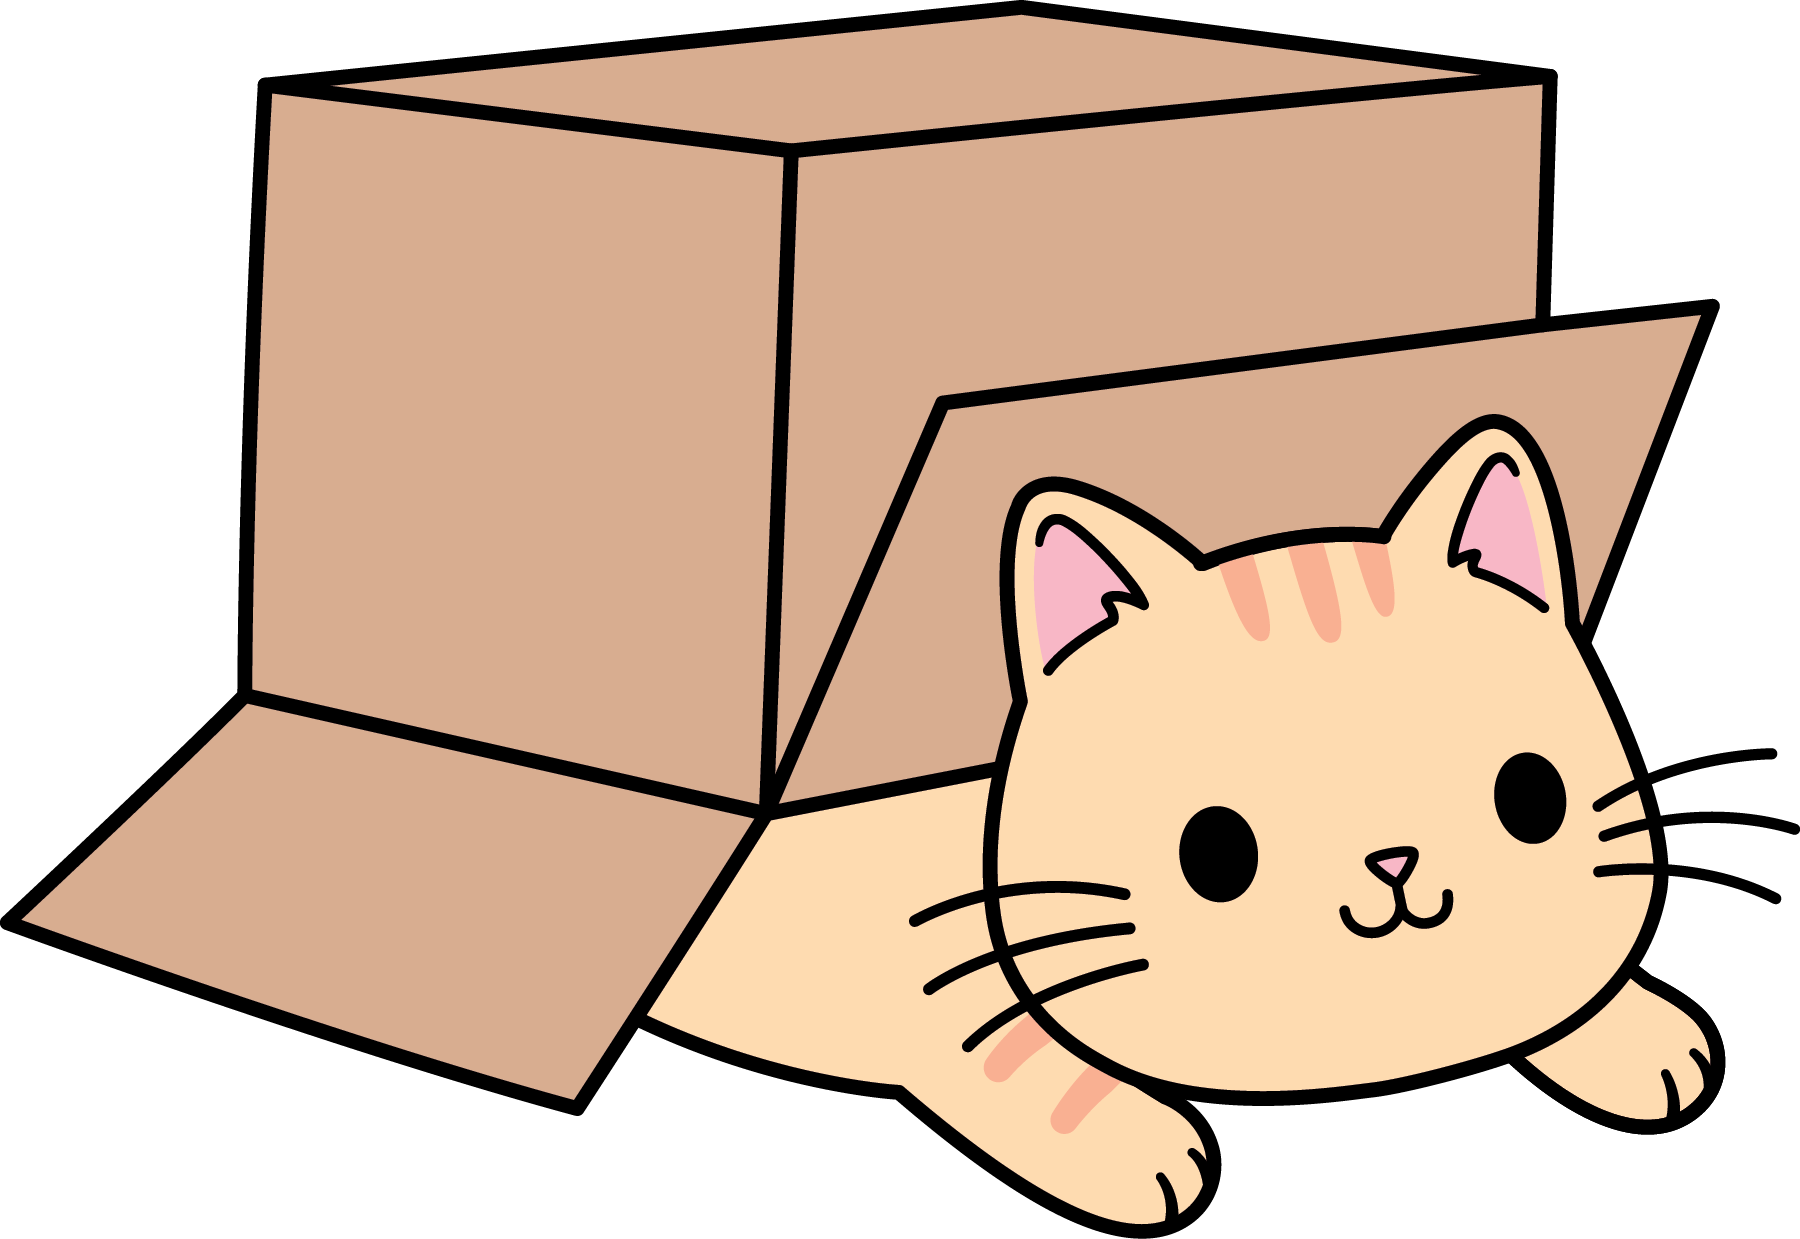 Cat In Box Drawing paringinst1